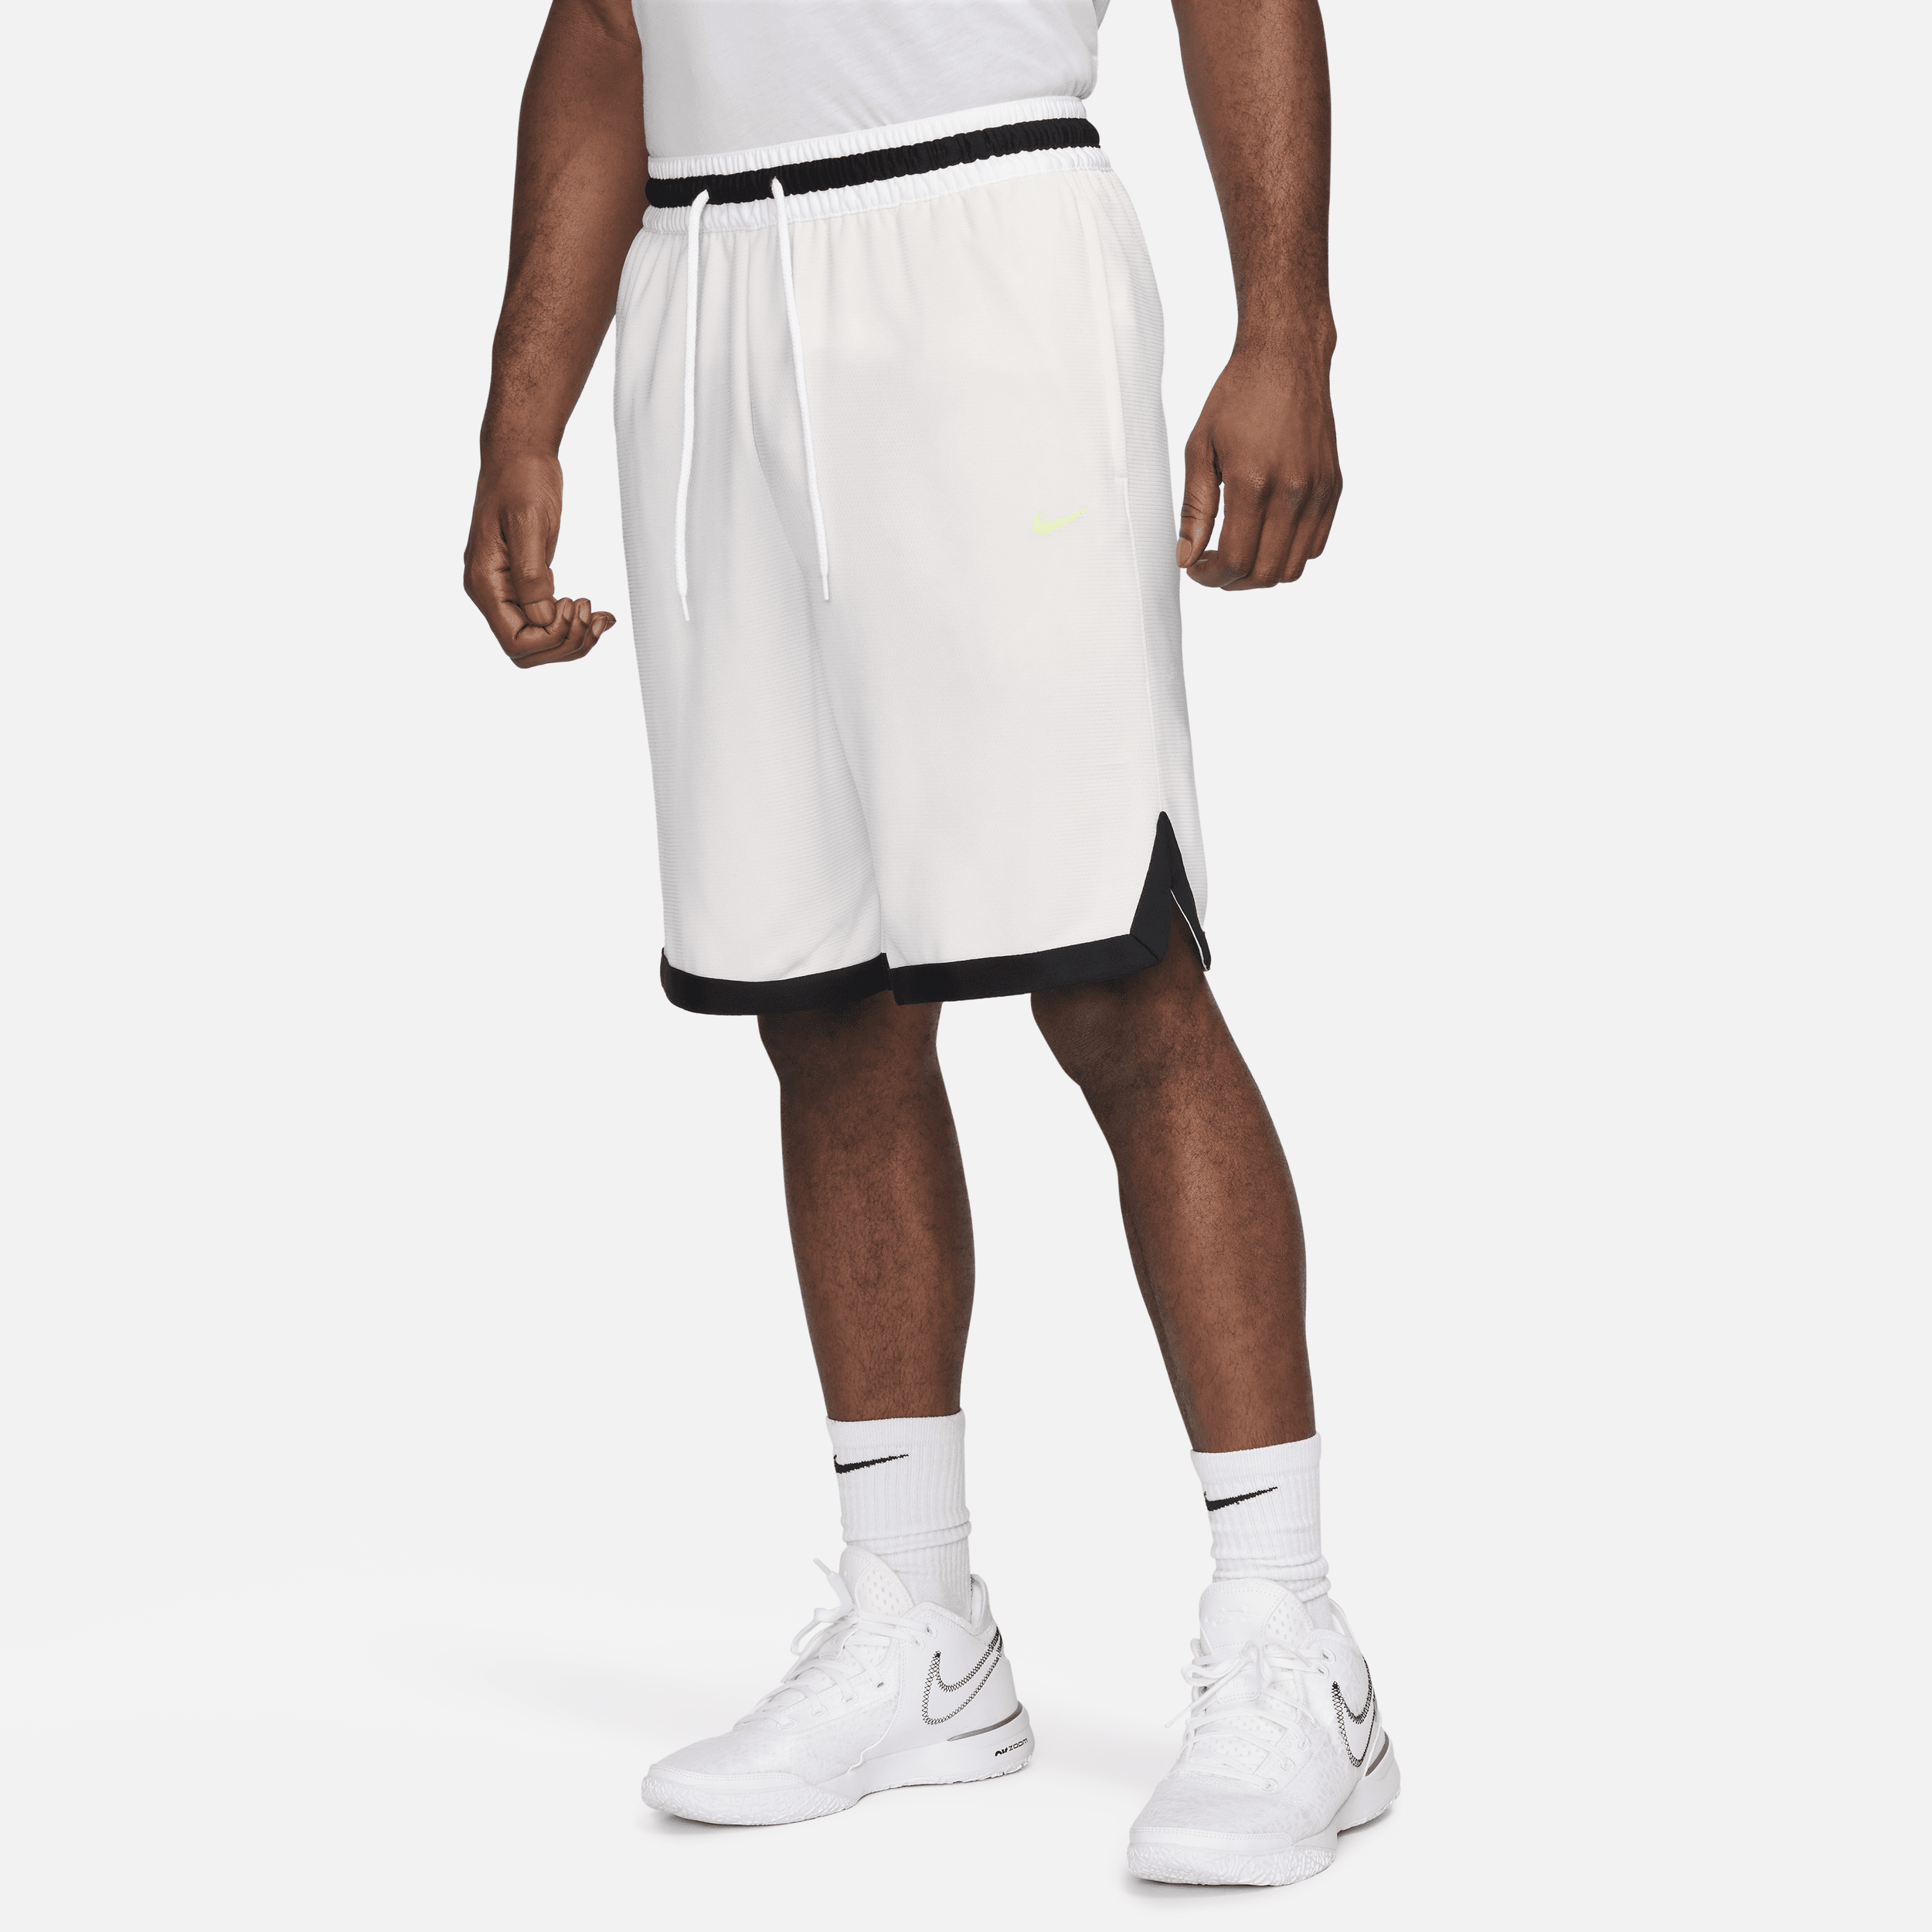 Nike Dri-FIT DNA-basketballshorts (25 cm) til mænd - grå